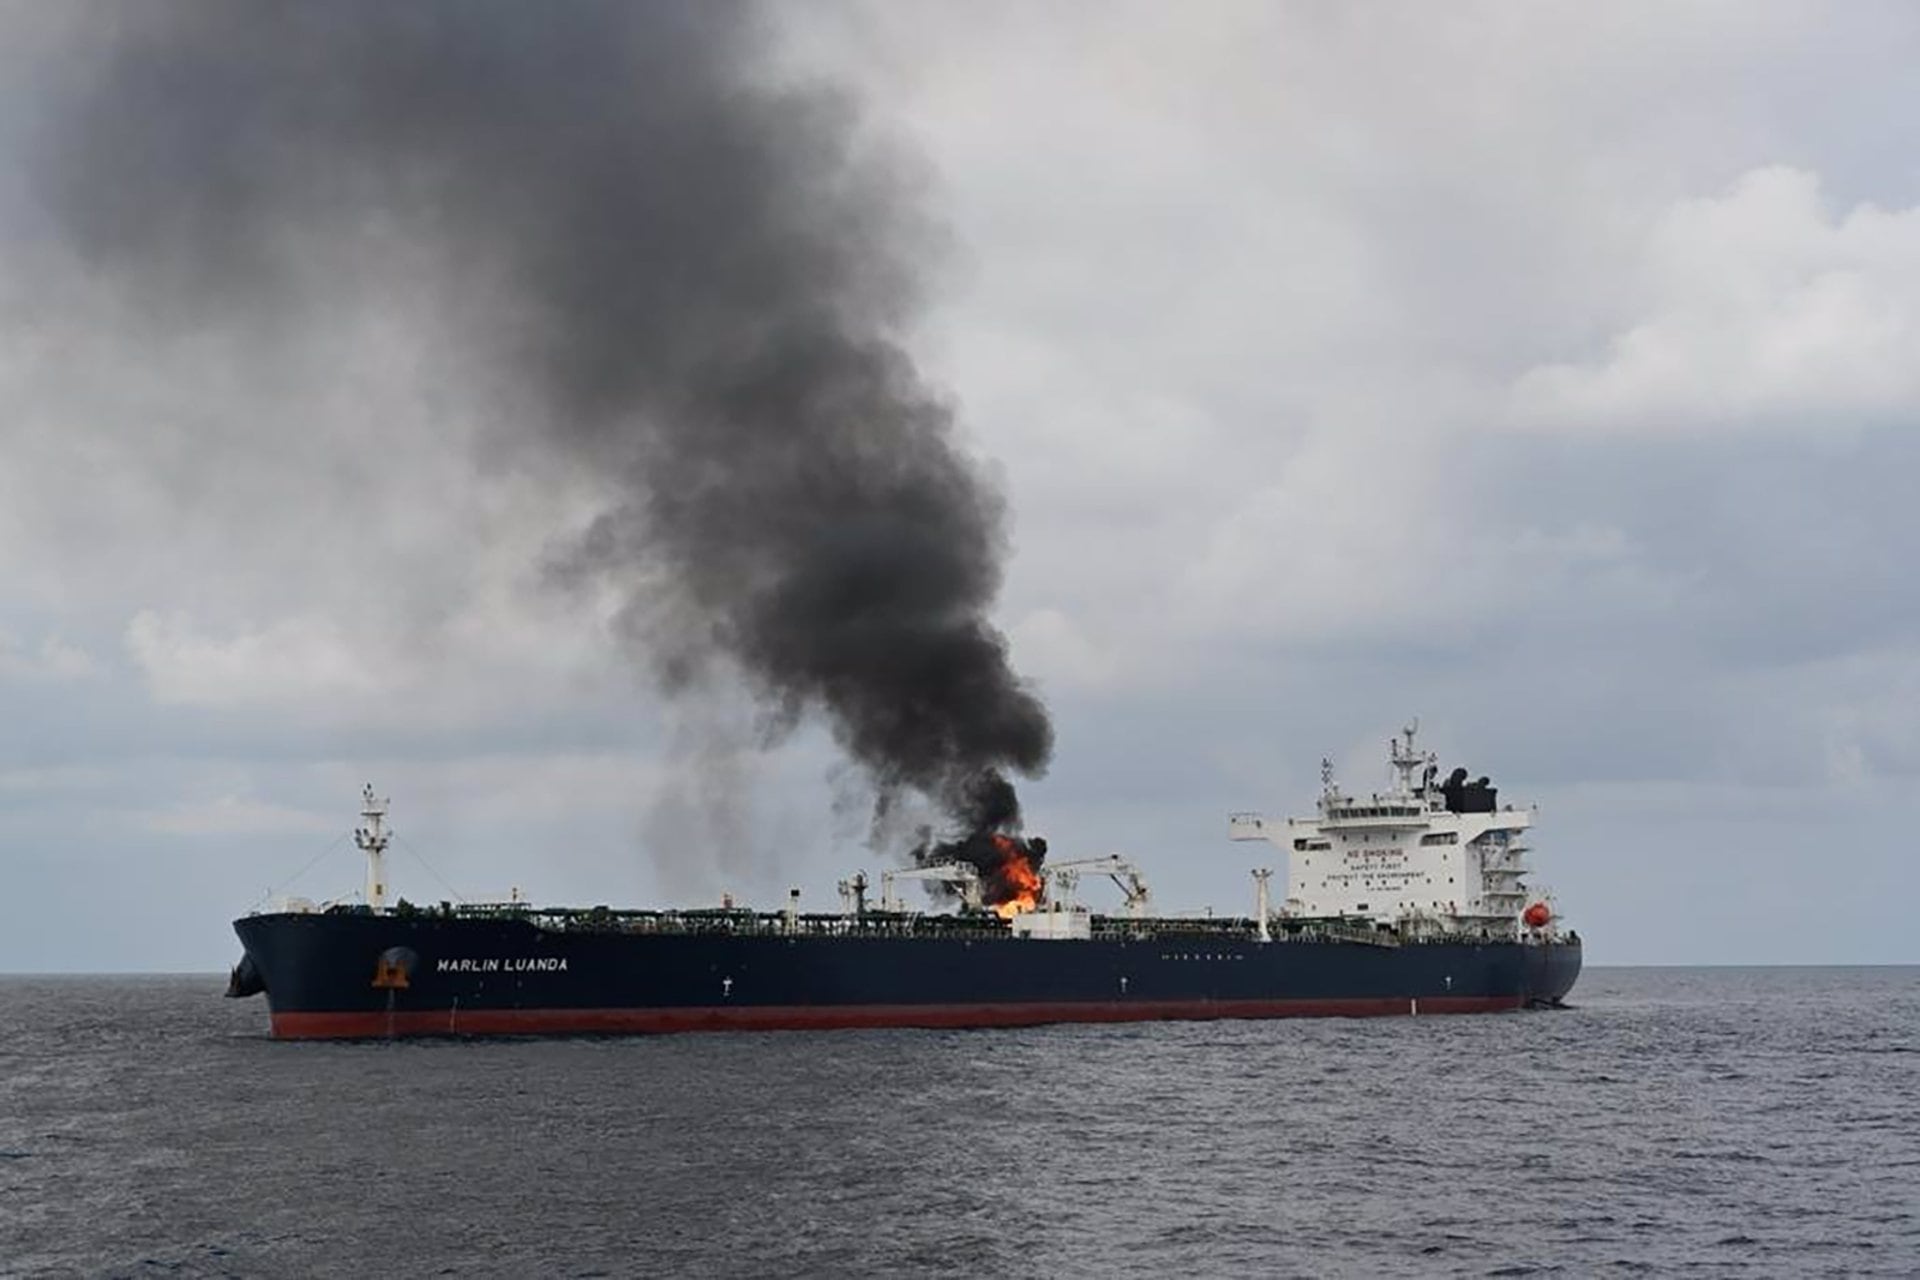 27/01/2024 27 de enero de 2024, Golfo de Adén, Yemen: El buque Marlin Luanda se incendió en el Golfo de Adén después de que, según informes, fue alcanzado por un misil antibuque disparado desde una zona controlada por los hutíes en Yemen.
POLÍTICA
Europa Press/Contacto/Marina de la India